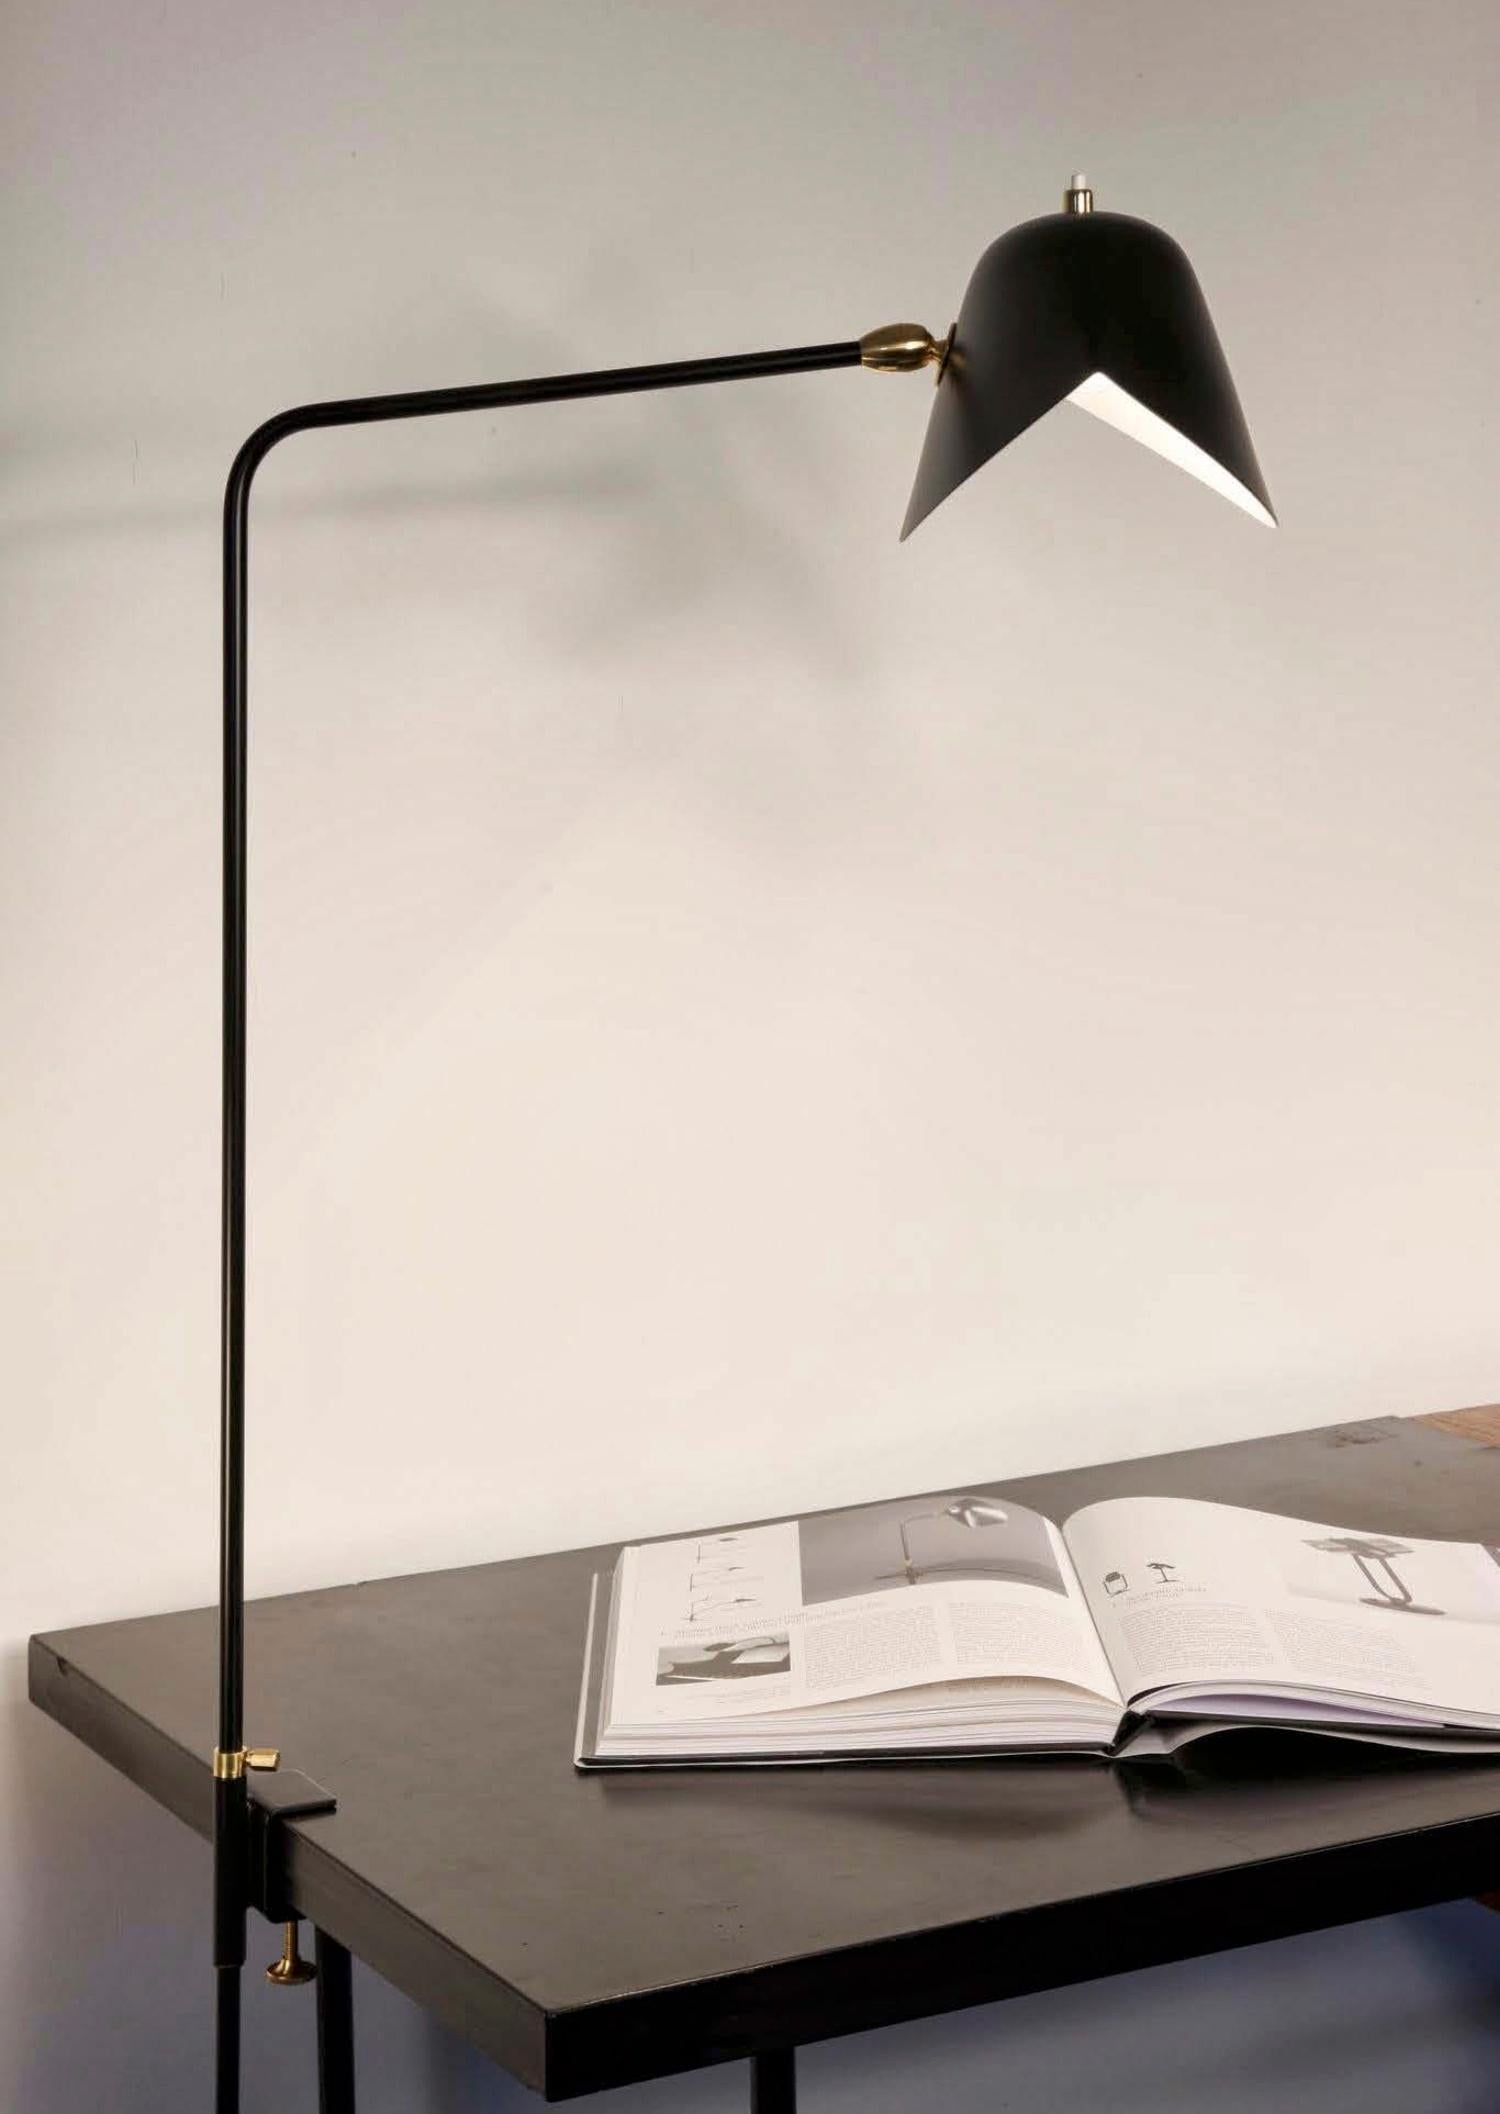 Clamp Schreibtischlampe. Mit einer Höhe von 26 Zoll kann diese Leuchte an vielen Oberflächen befestigt werden und bietet eine direkte Beleuchtung, wo sie benötigt wird.

Erhältlich in Weiß oder Schwarz. Messingdrehgelenke verbinden die